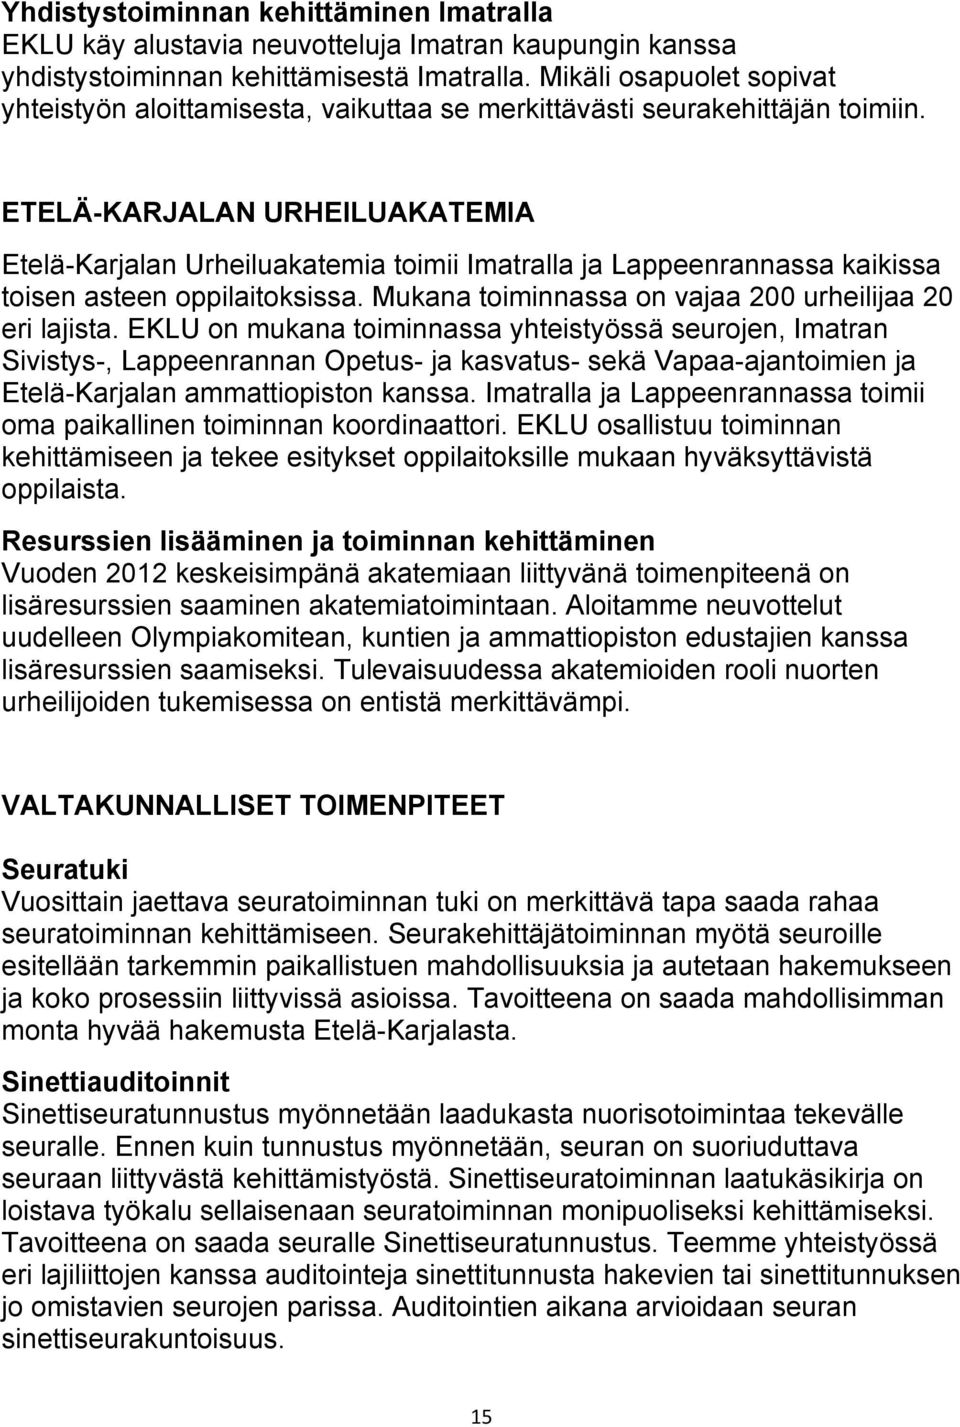 ETELÄ-KARJALAN URHEILUAKATEMIA Etelä-Karjalan Urheiluakatemia toimii Imatralla ja Lappeenrannassa kaikissa toisen asteen oppilaitoksissa. Mukana toiminnassa on vajaa 200 urheilijaa 20 eri lajista.